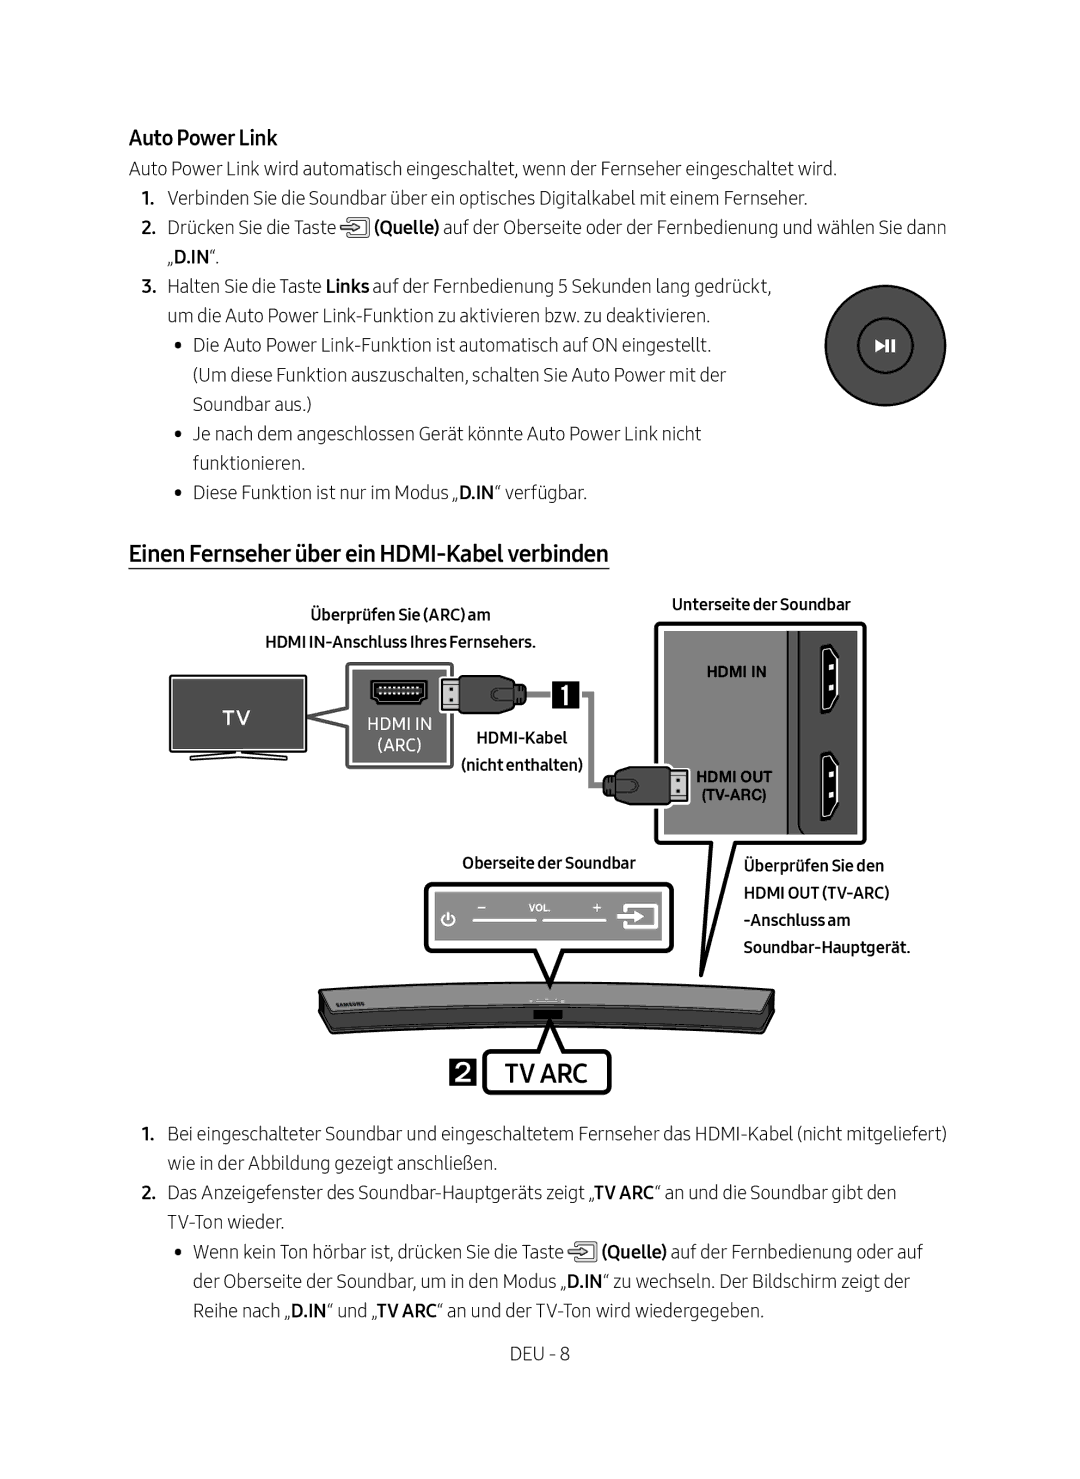 Samsung HW-M4500/EN manual Einen Fernseher über ein HDMI-Kabel verbinden 